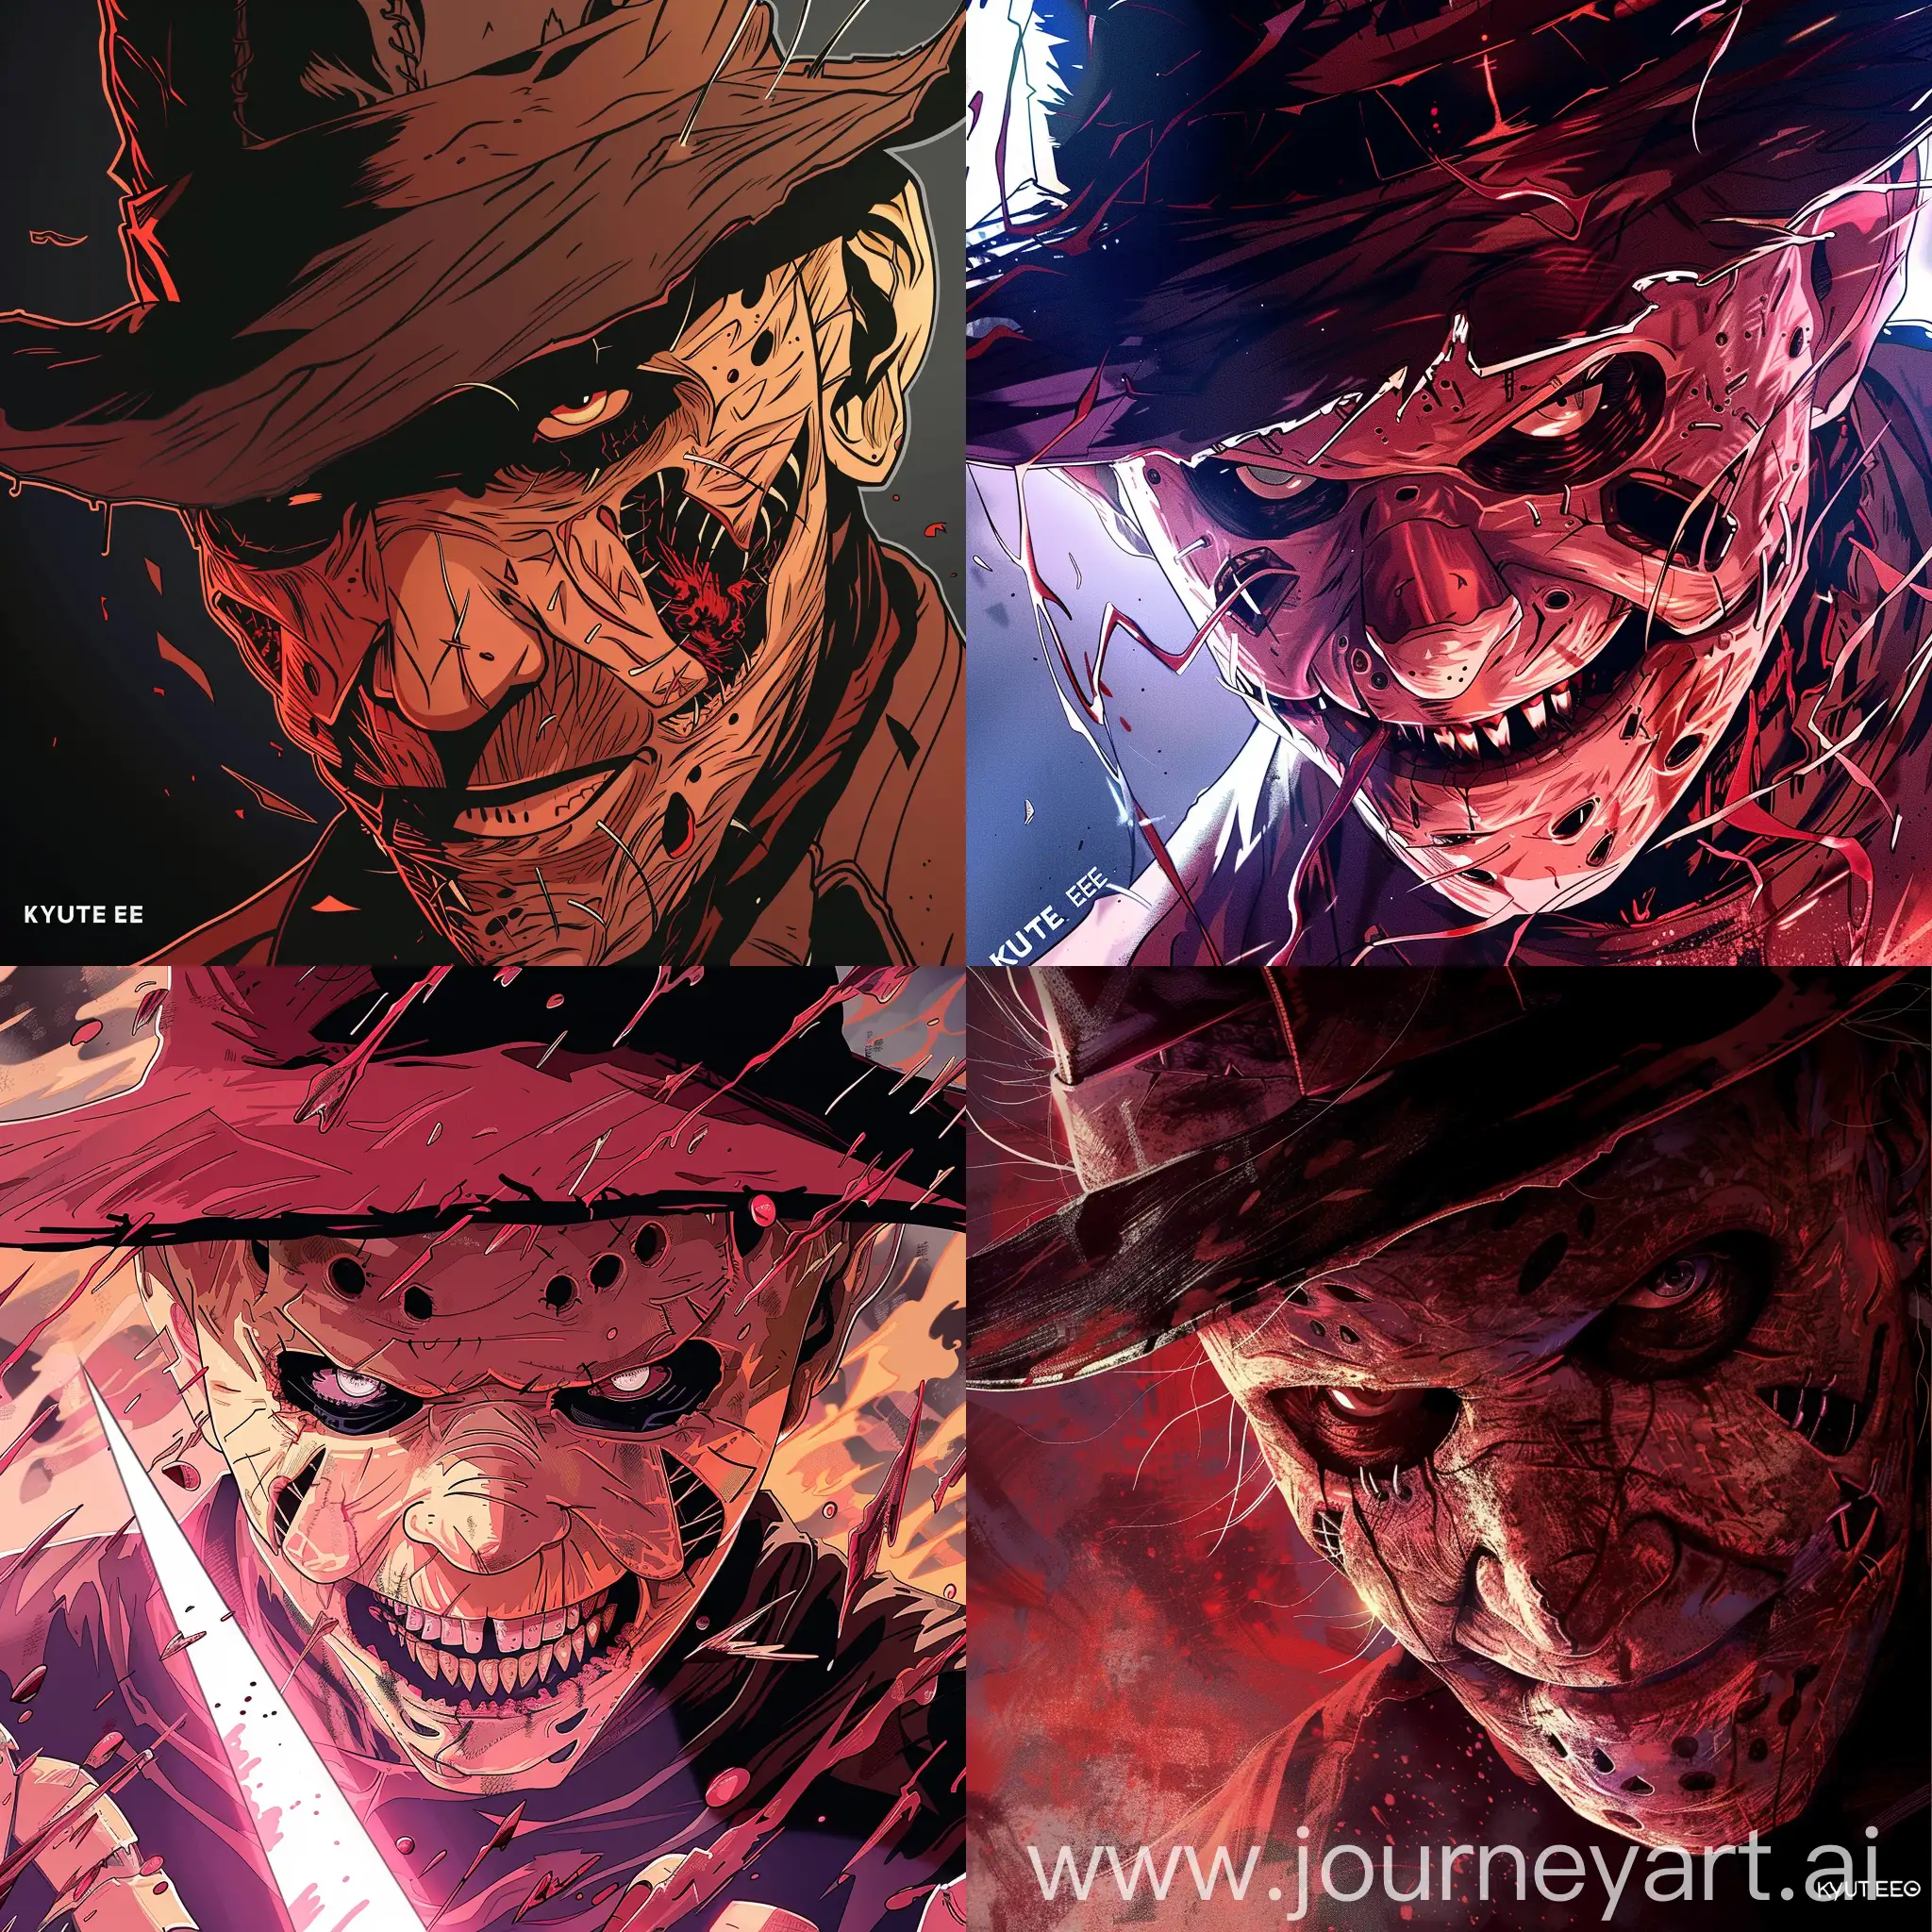 Anime-Style-Illustration-of-Freddy-Krueger-Nightmare-on-Elm-Street